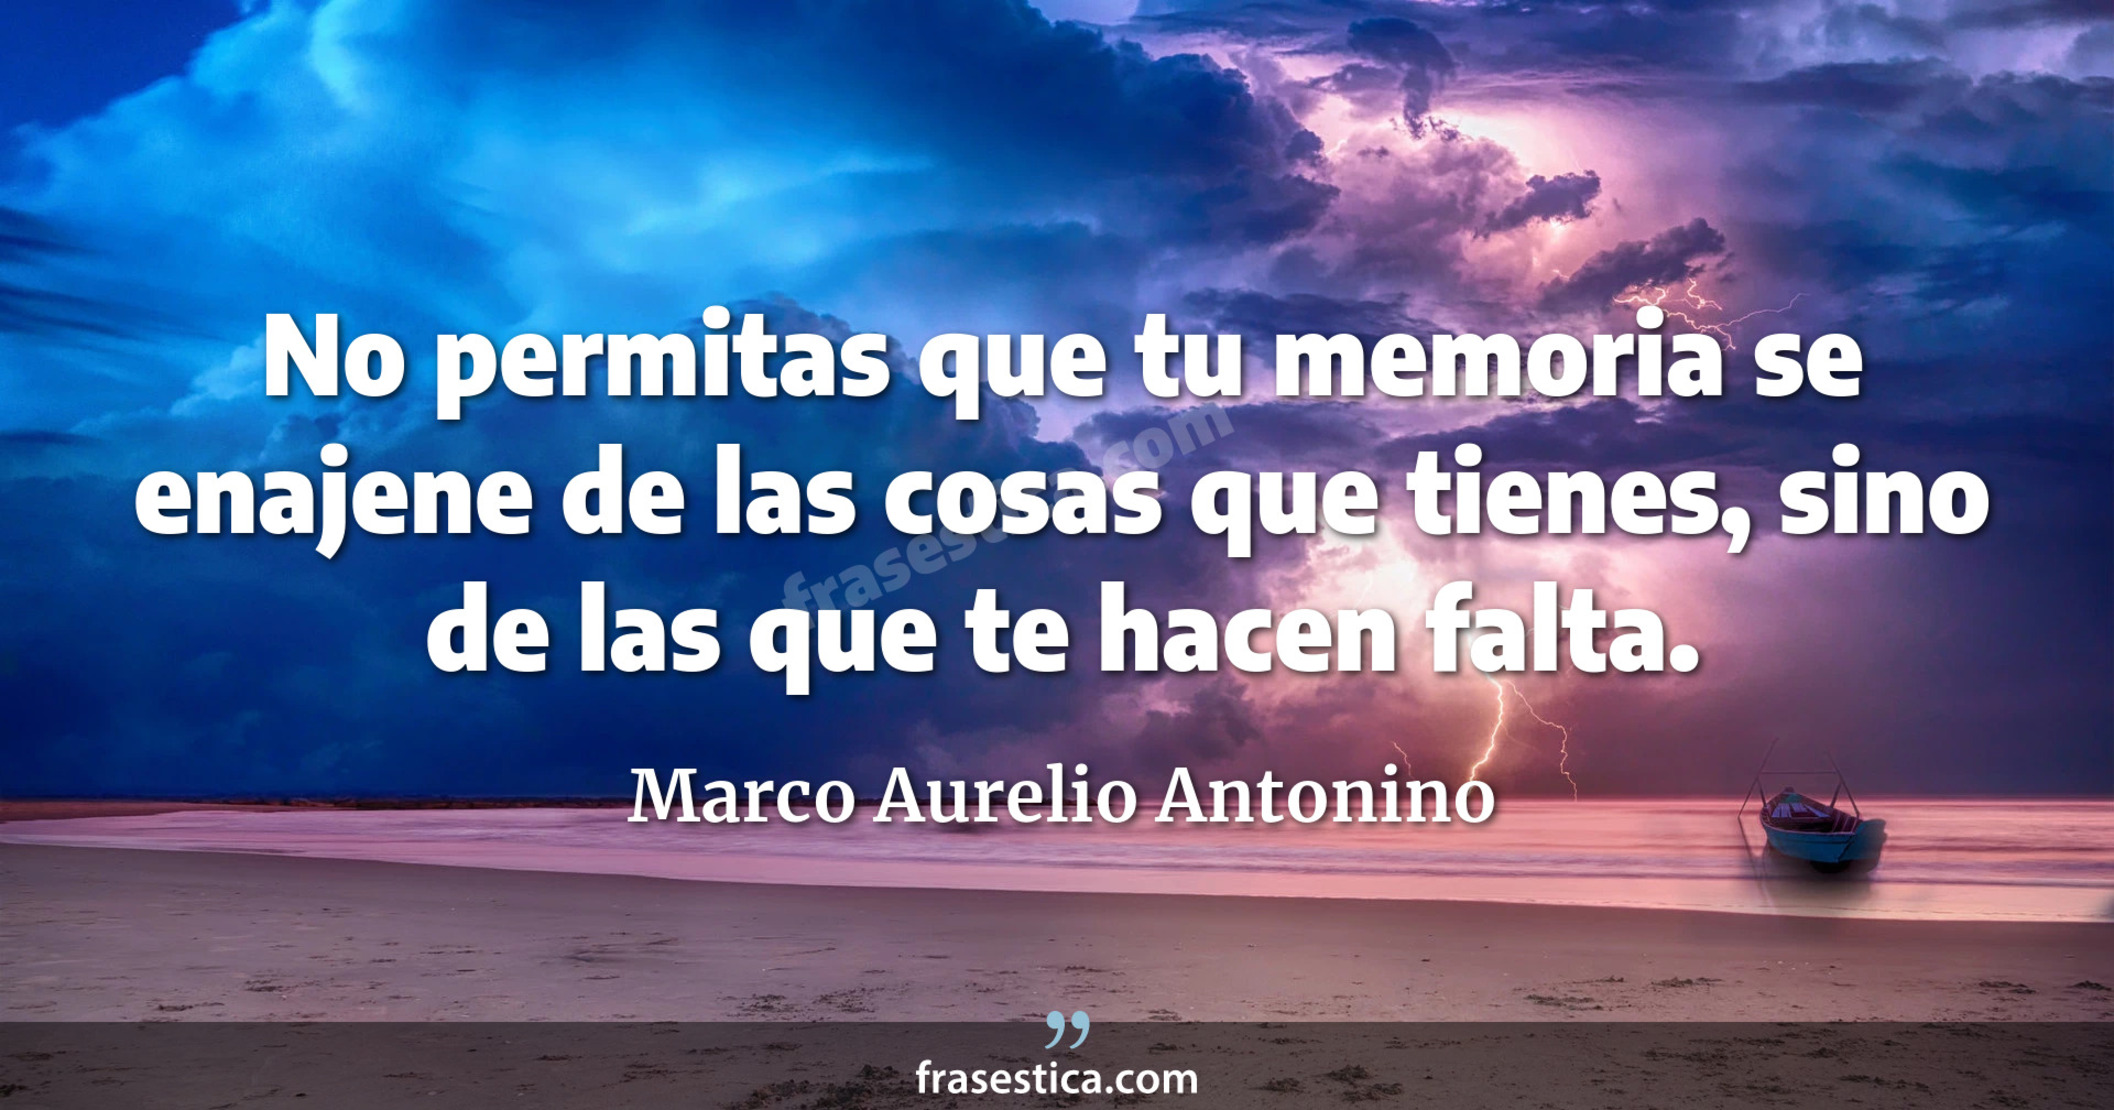 No permitas que tu memoria se enajene de las cosas que tienes, sino de las que te hacen falta. - Marco Aurelio Antonino